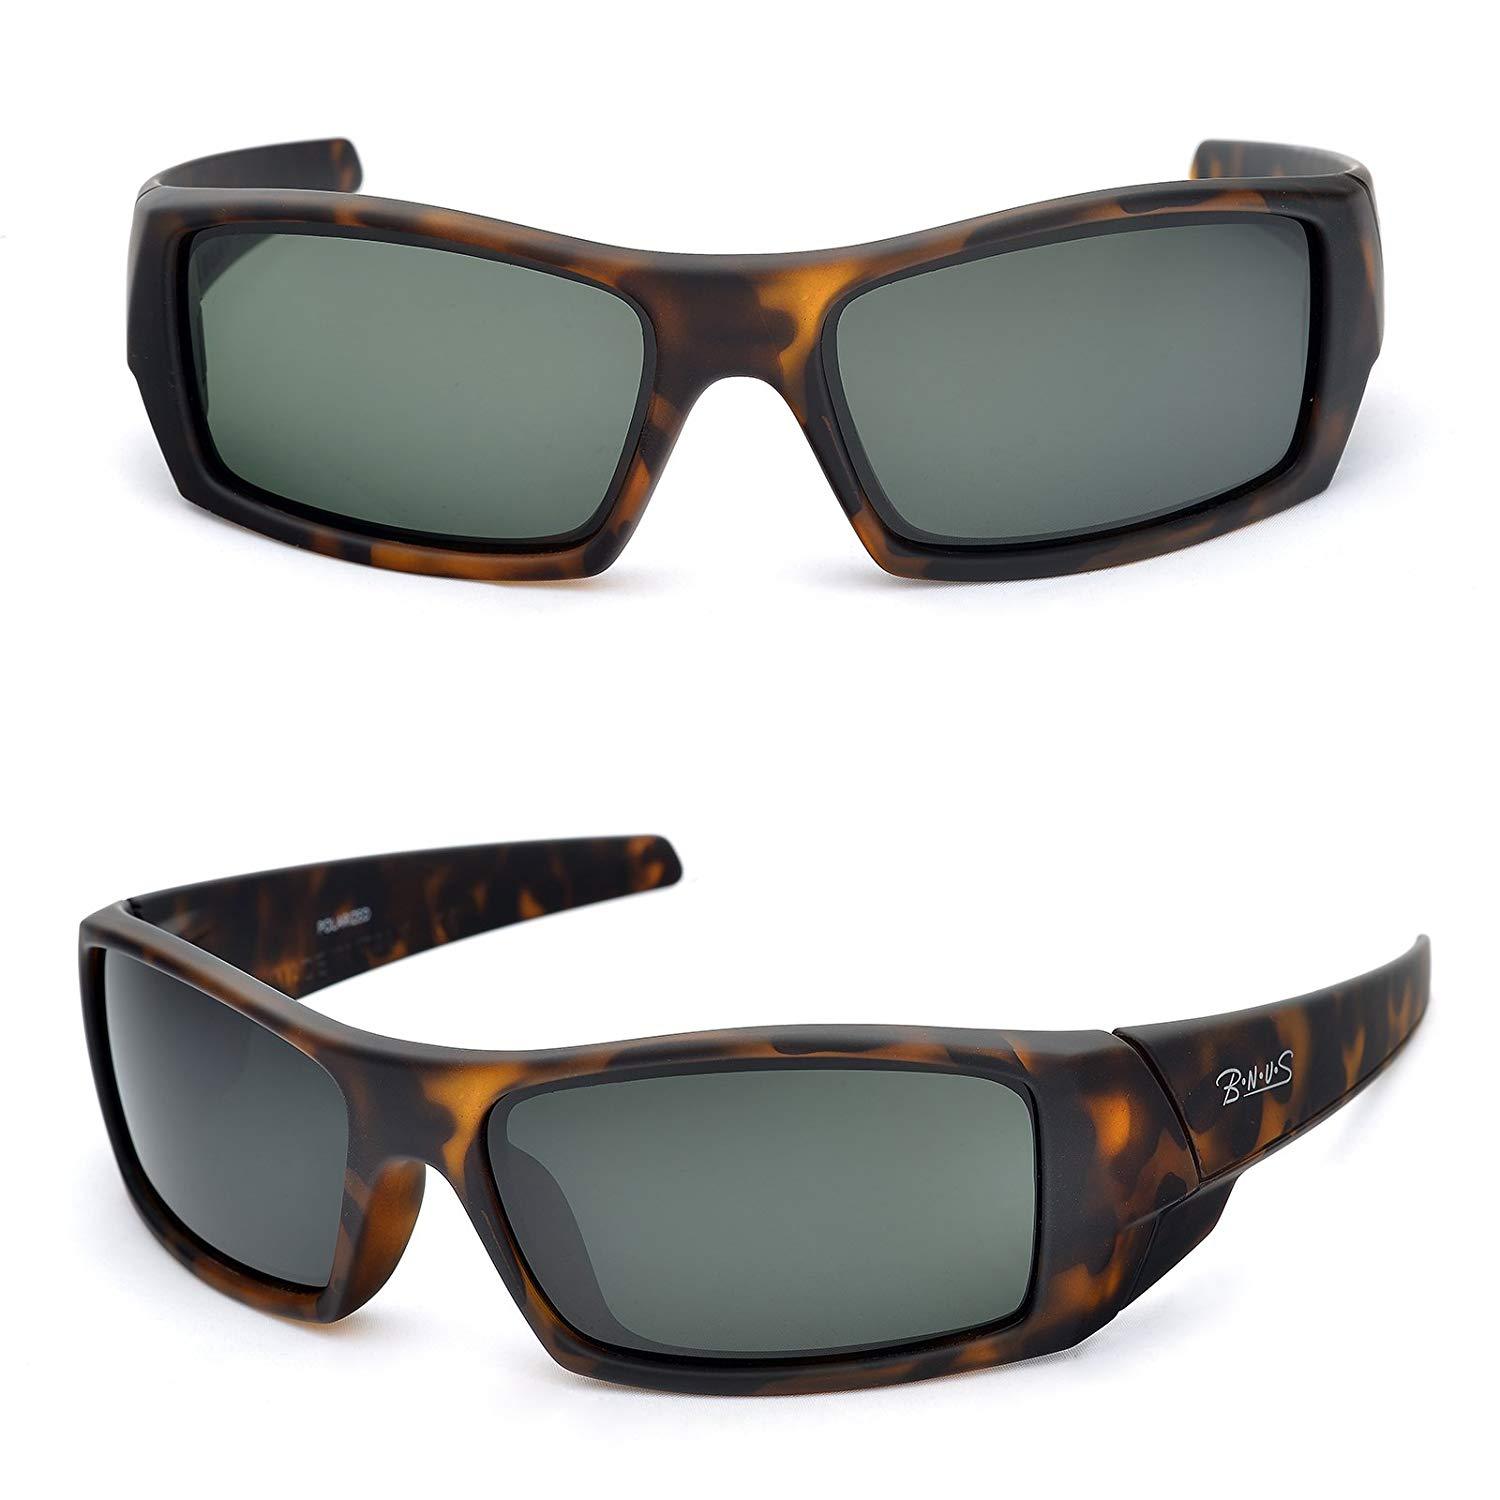 Bnus Rectangular Polarized Sunglasses For Women Men Corning Glass Lenses Frame Sunglasses